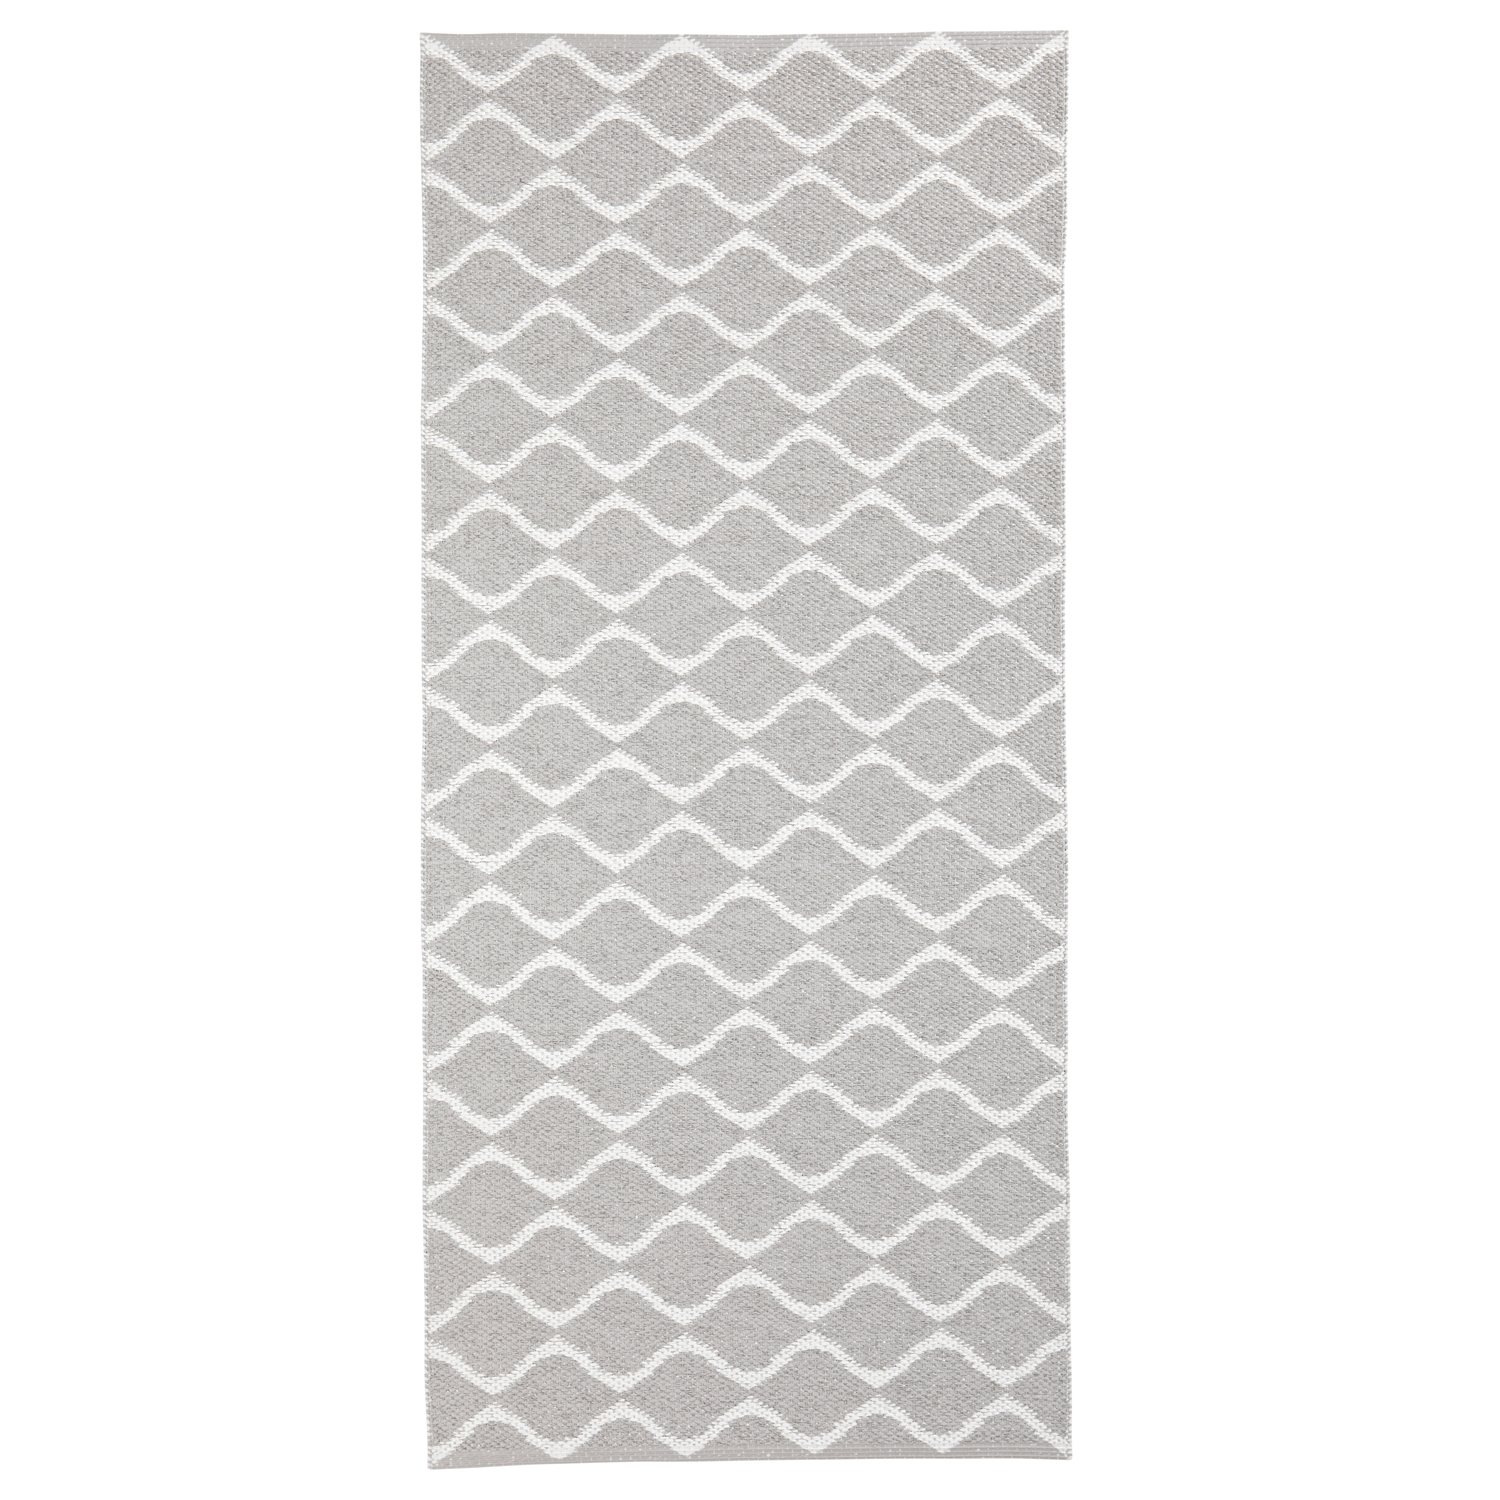 Horredsmattan Teppich Wave Grey für Innen und Aussen Made in Sweden since 1956 UV-Beständig